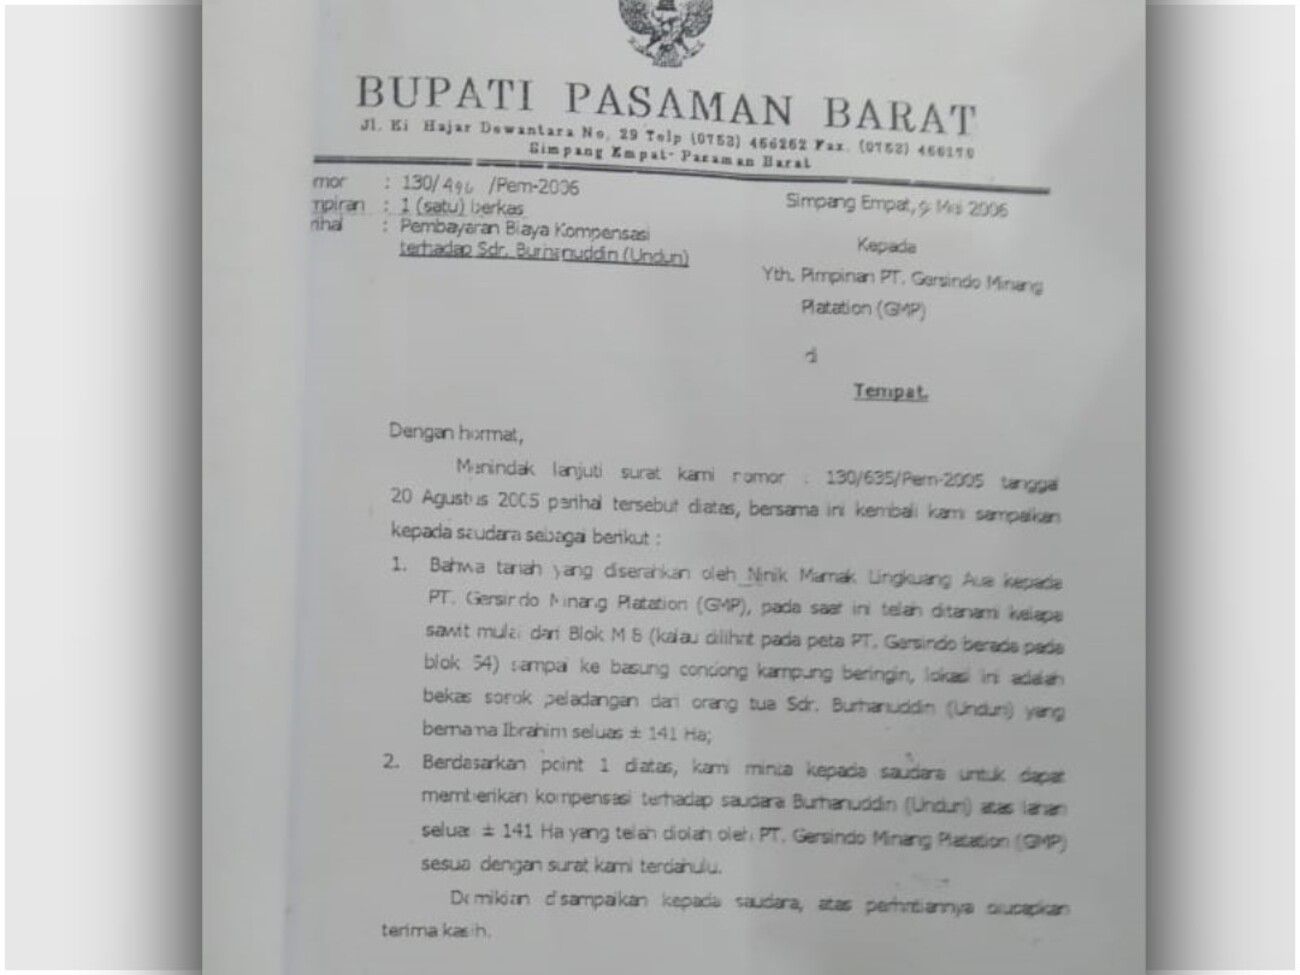 Surat perintah dari Pemerintah Pasaman Barat kepada Pimpinan PT GMP (Wilmar Group) perihal pembayaran kompensasi terhadap Burhanuddin